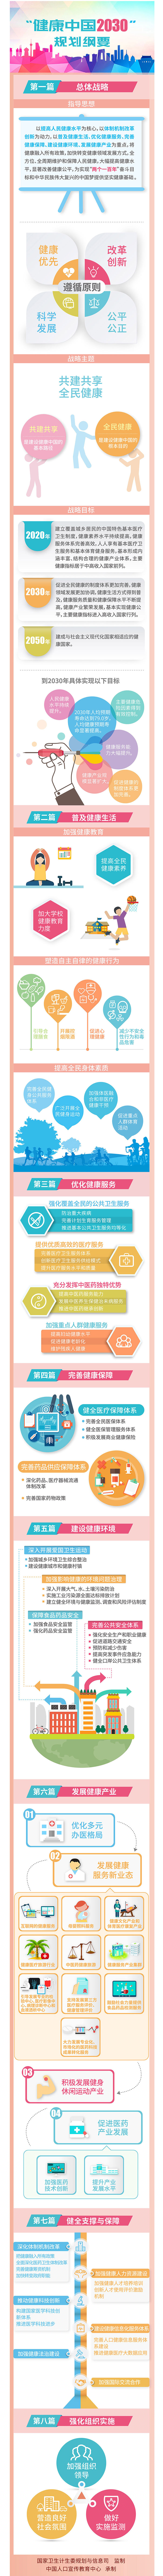 一图读懂“健康中国2030”规划纲要 | 卫计委版